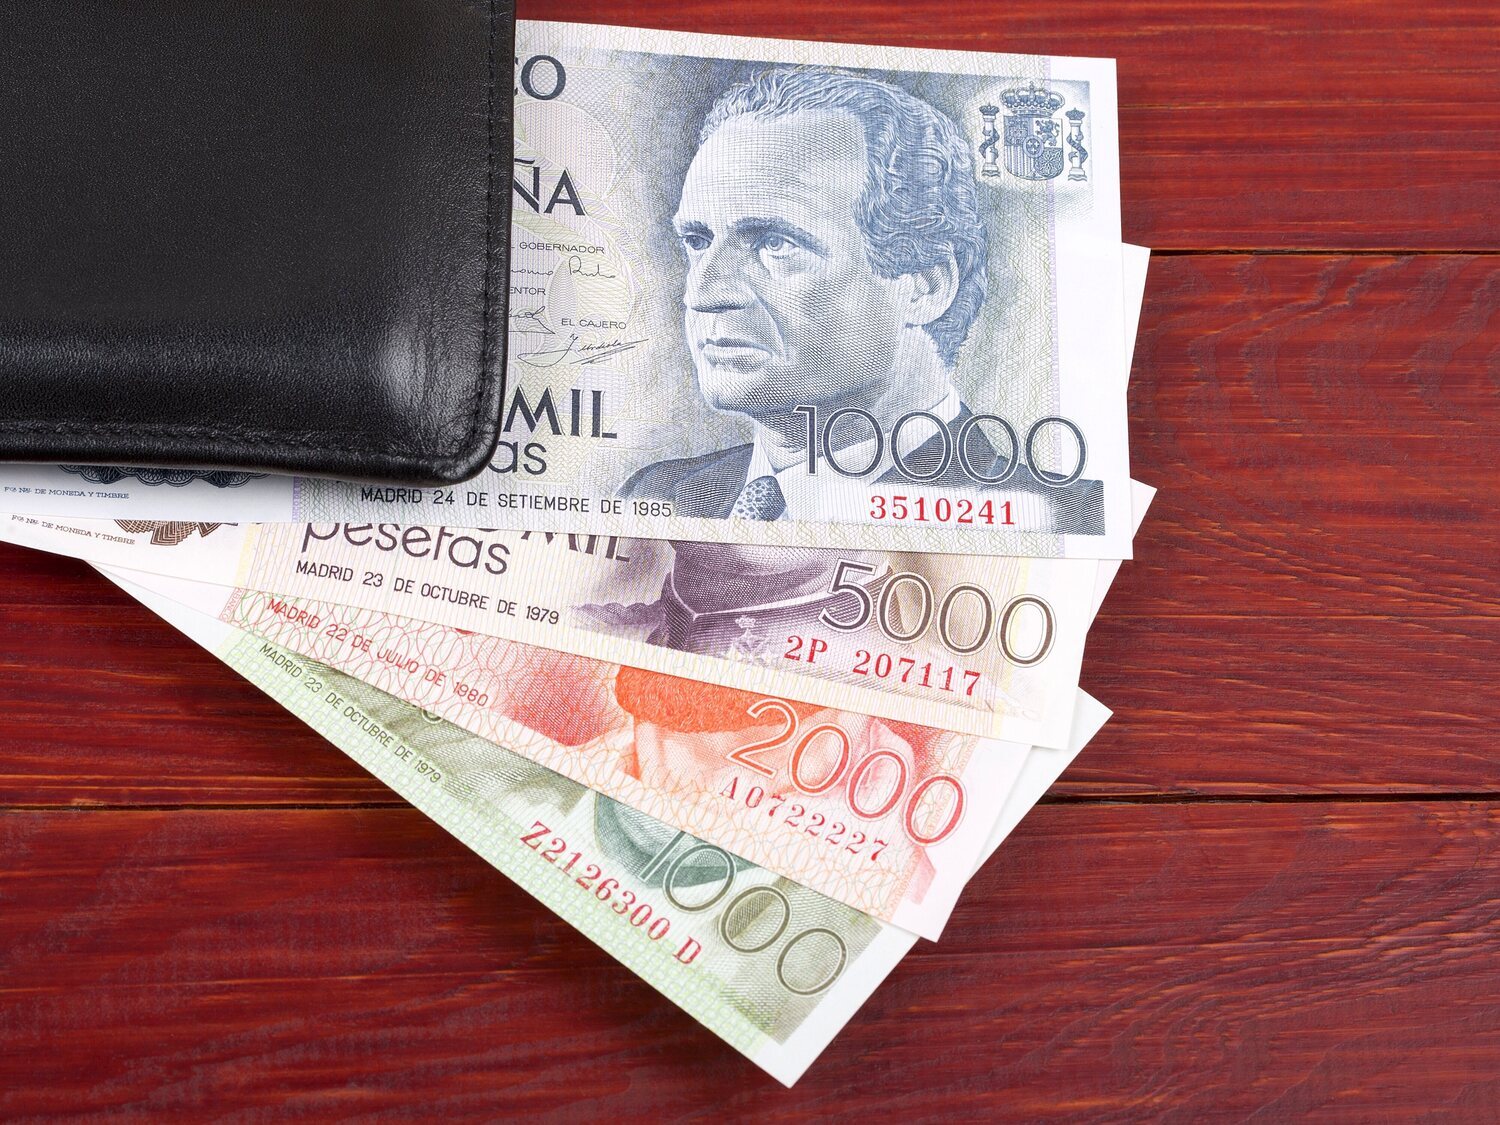 El elevado precio que pueden llegar a alcanzar en subasta estos billetes de mil pesetas